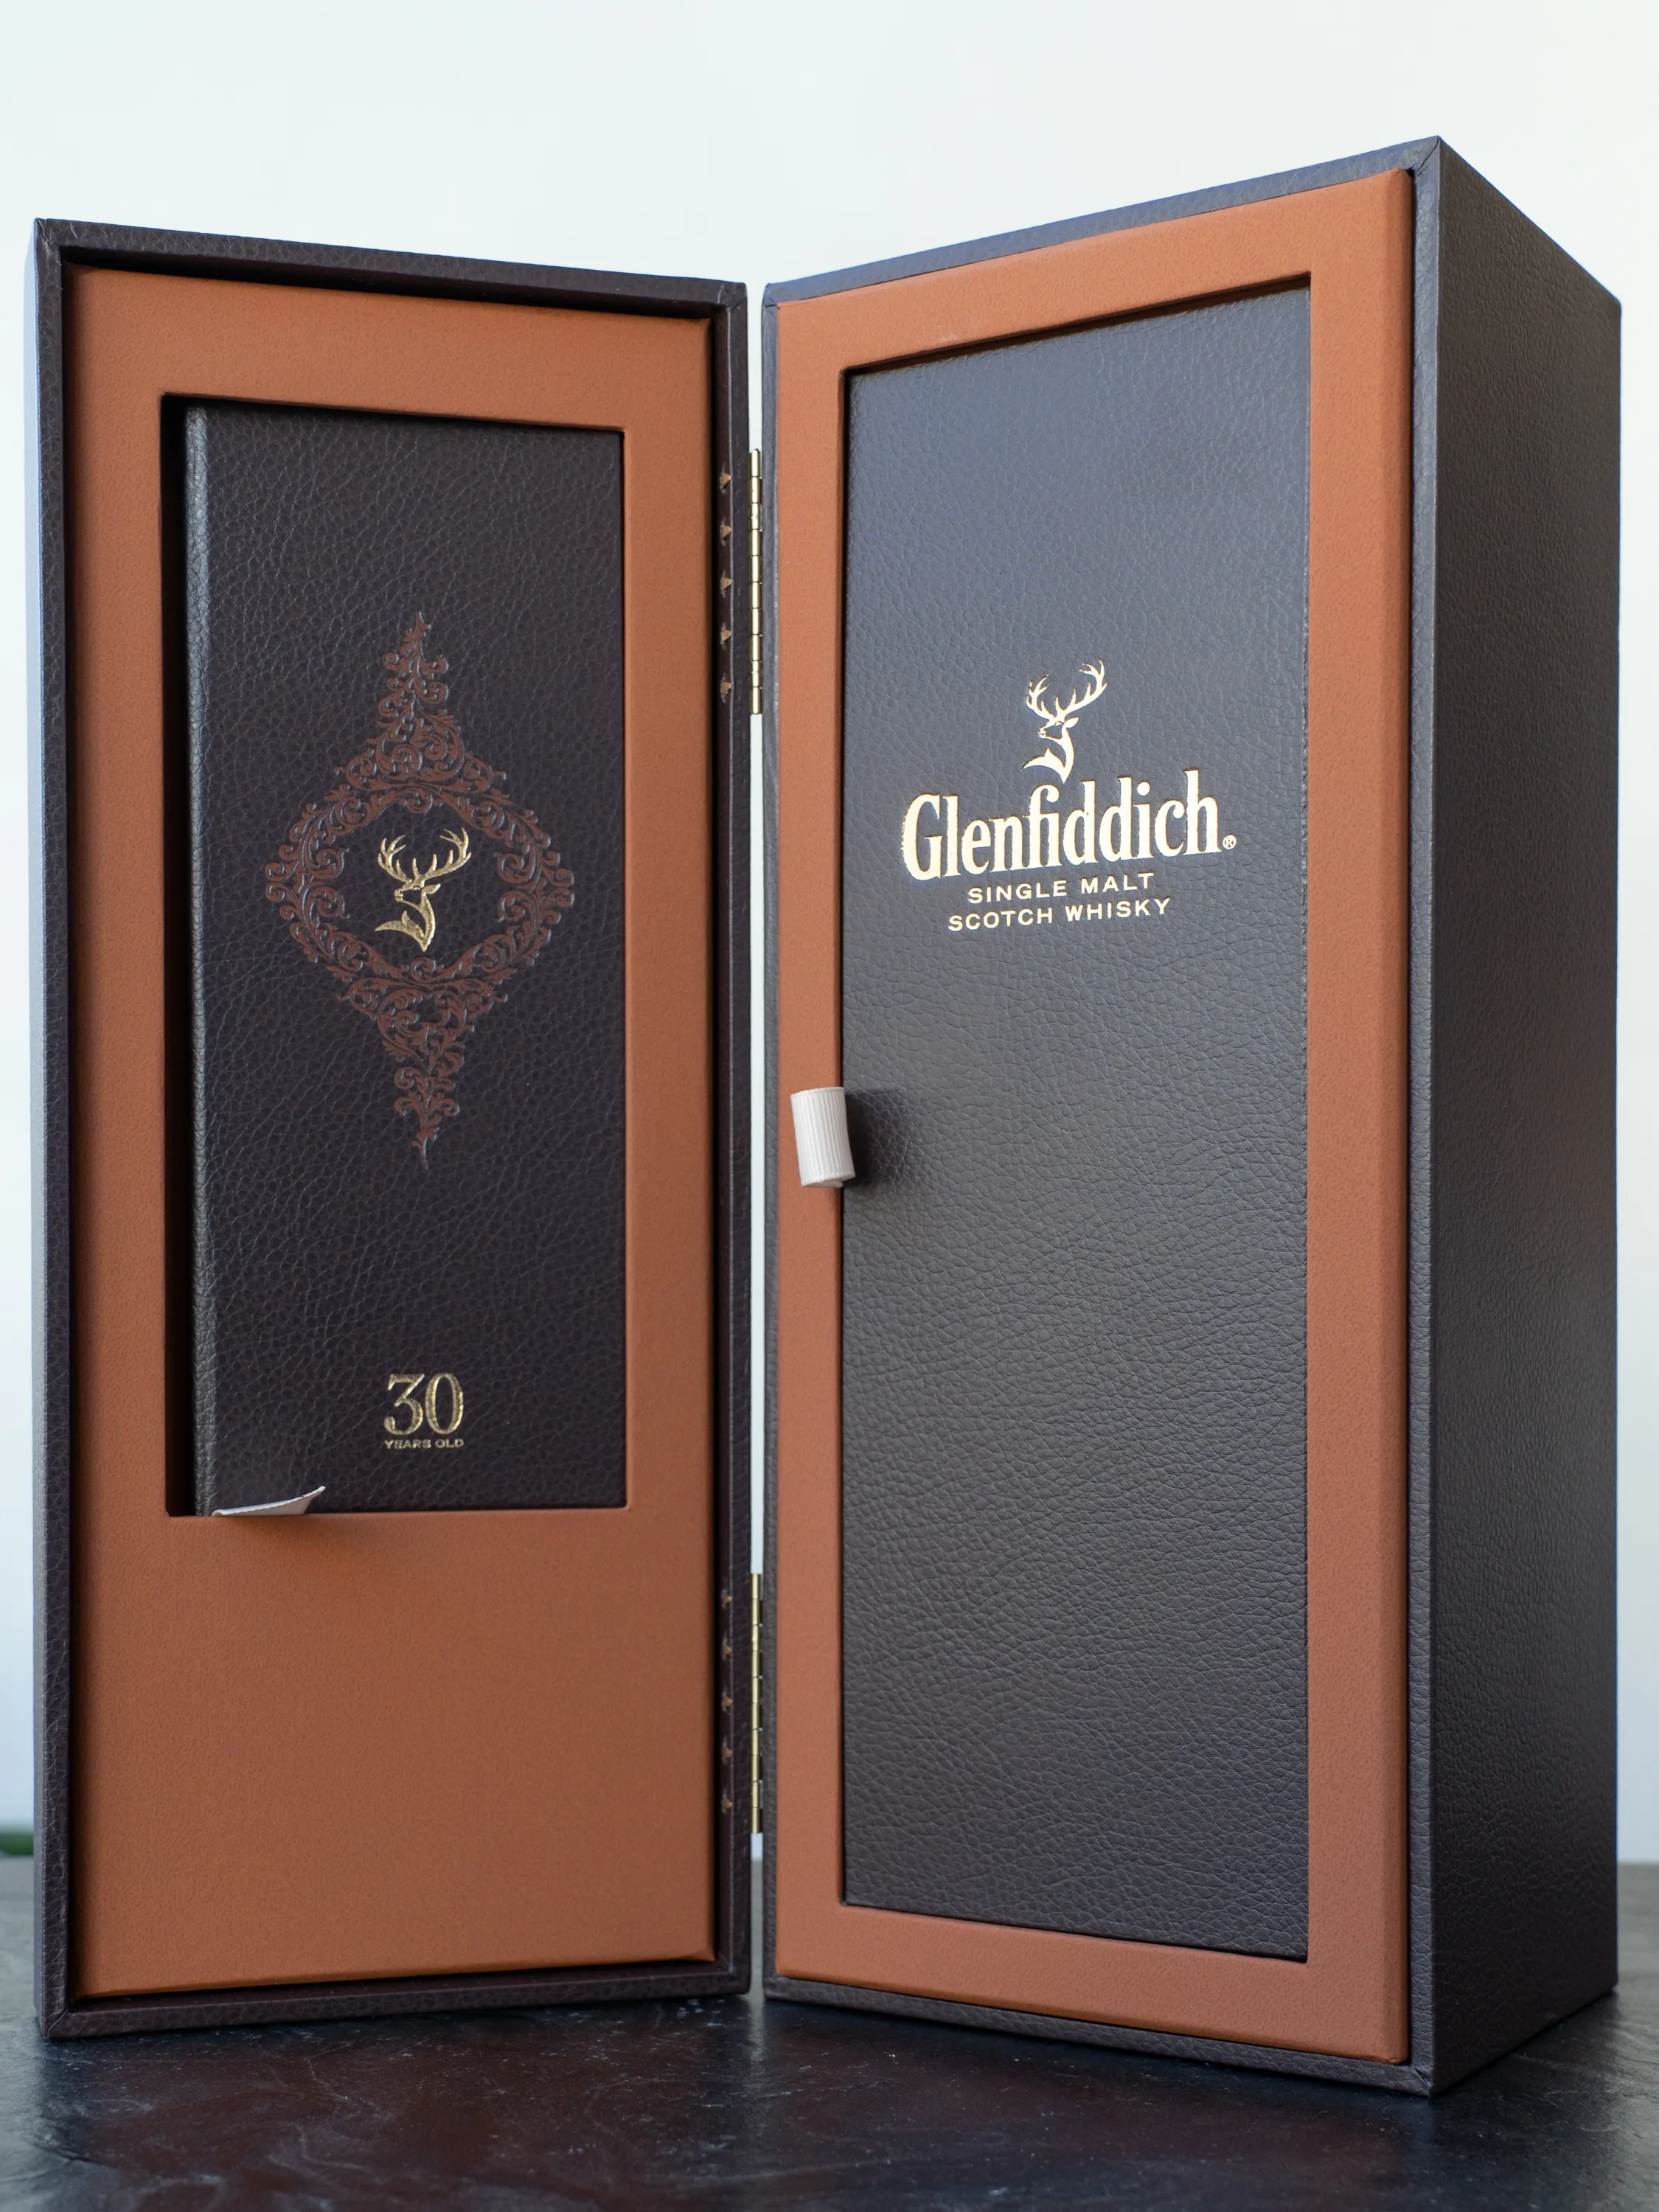 Виски Glenfiddich 30 Years Old / Гленфиддик 30 лет